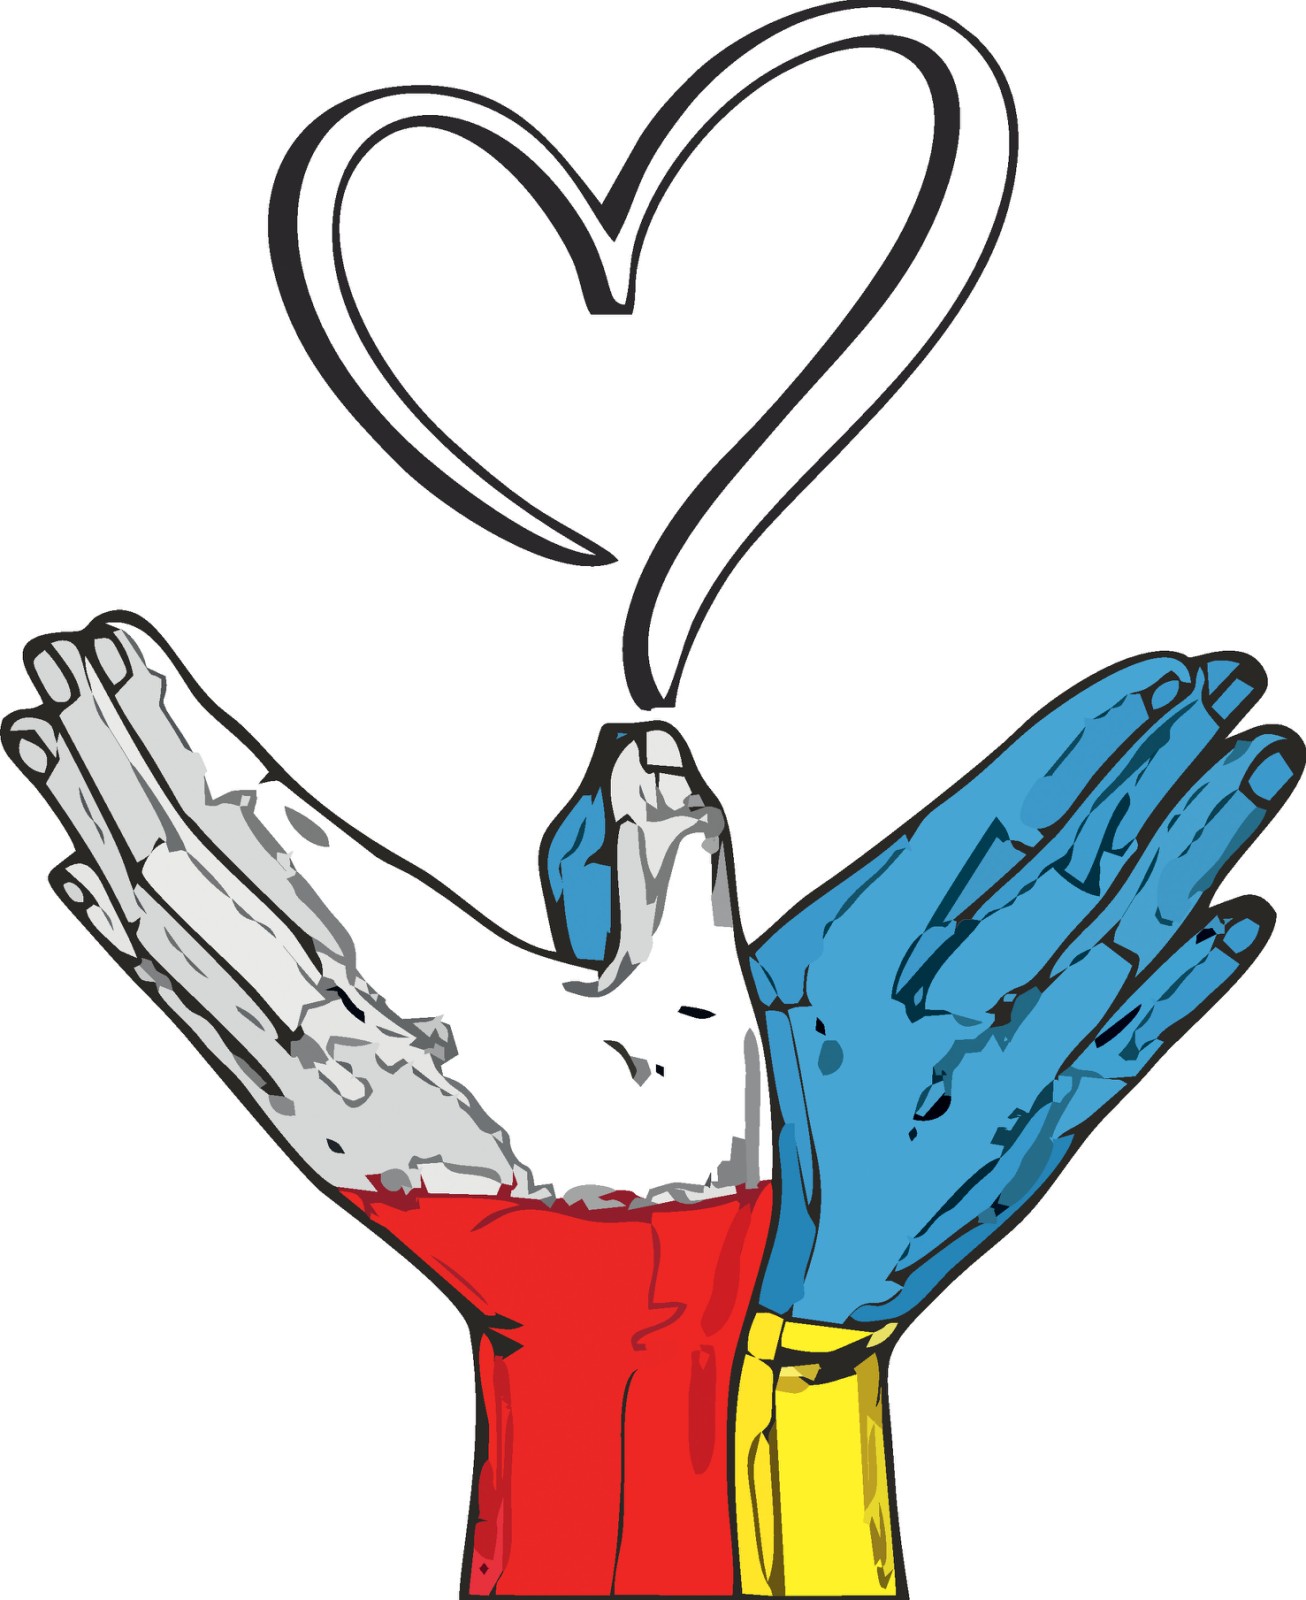 Термоаппликация Сердце (Польша и Украина), 20*24,5см, полноцвет /термопринтер/, шт. Термоаппликация термопринтер